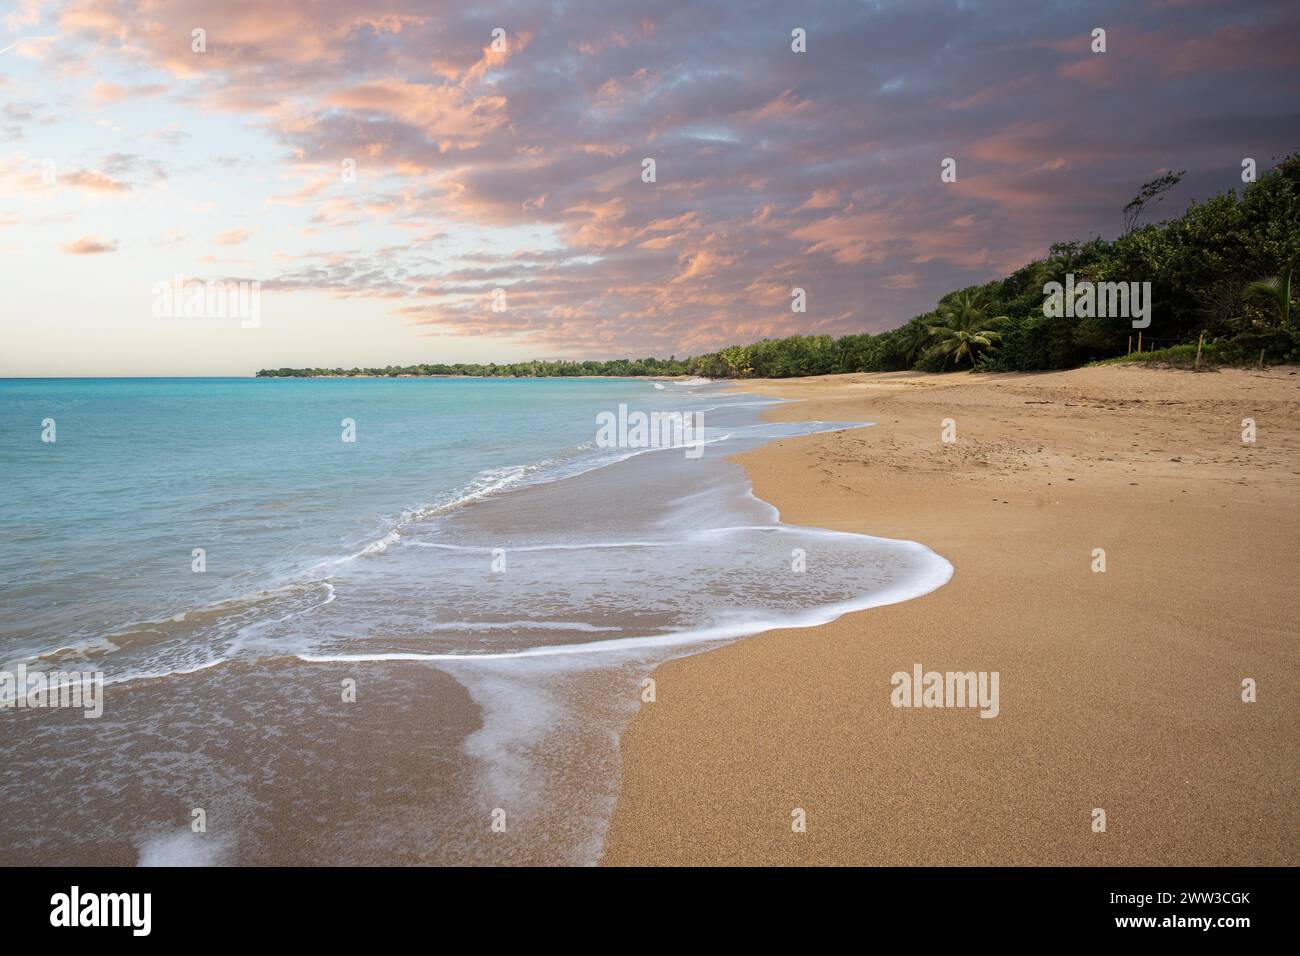 Einsamer, breiter Sandstrand mit türkisfarbenem Meer. Tropische Pflanzen in einer Bucht bei Sonnenuntergang in der Karibik. Plage de Cluny, Basse Terre, Guadeloupe Stockfoto